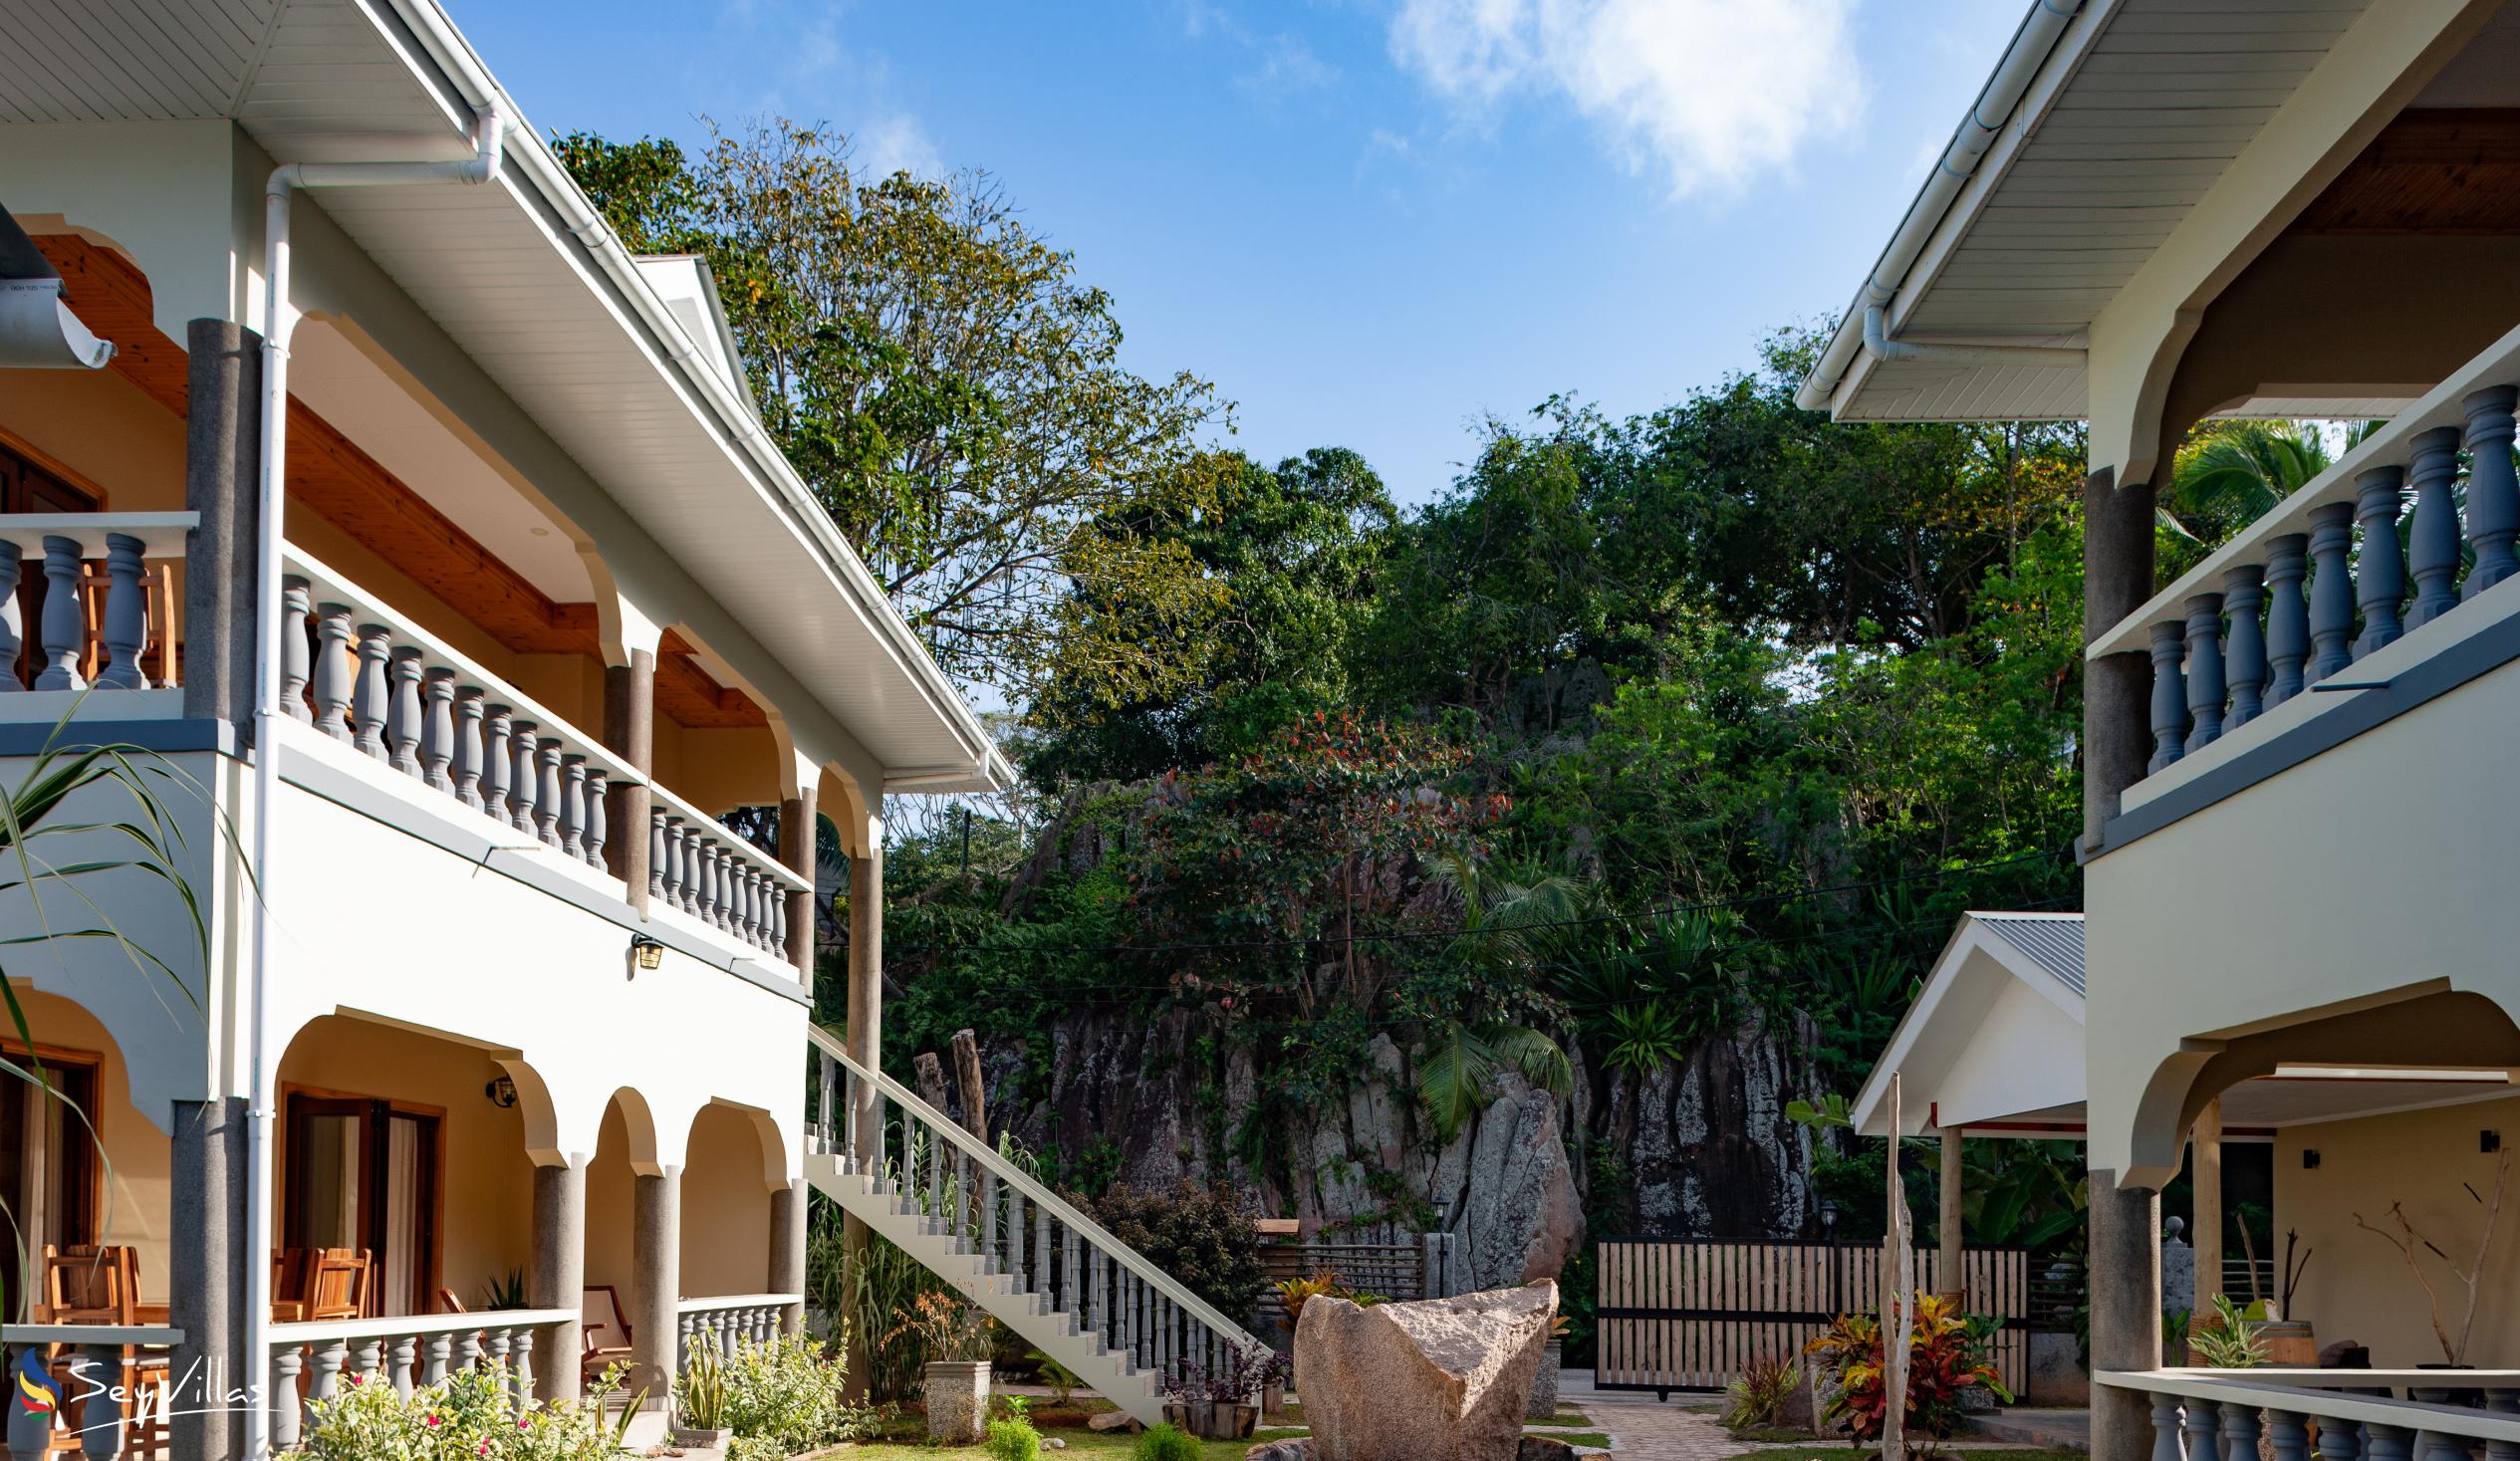 Photo 13: Maison Ed-Elle - Outdoor area - La Digue (Seychelles)